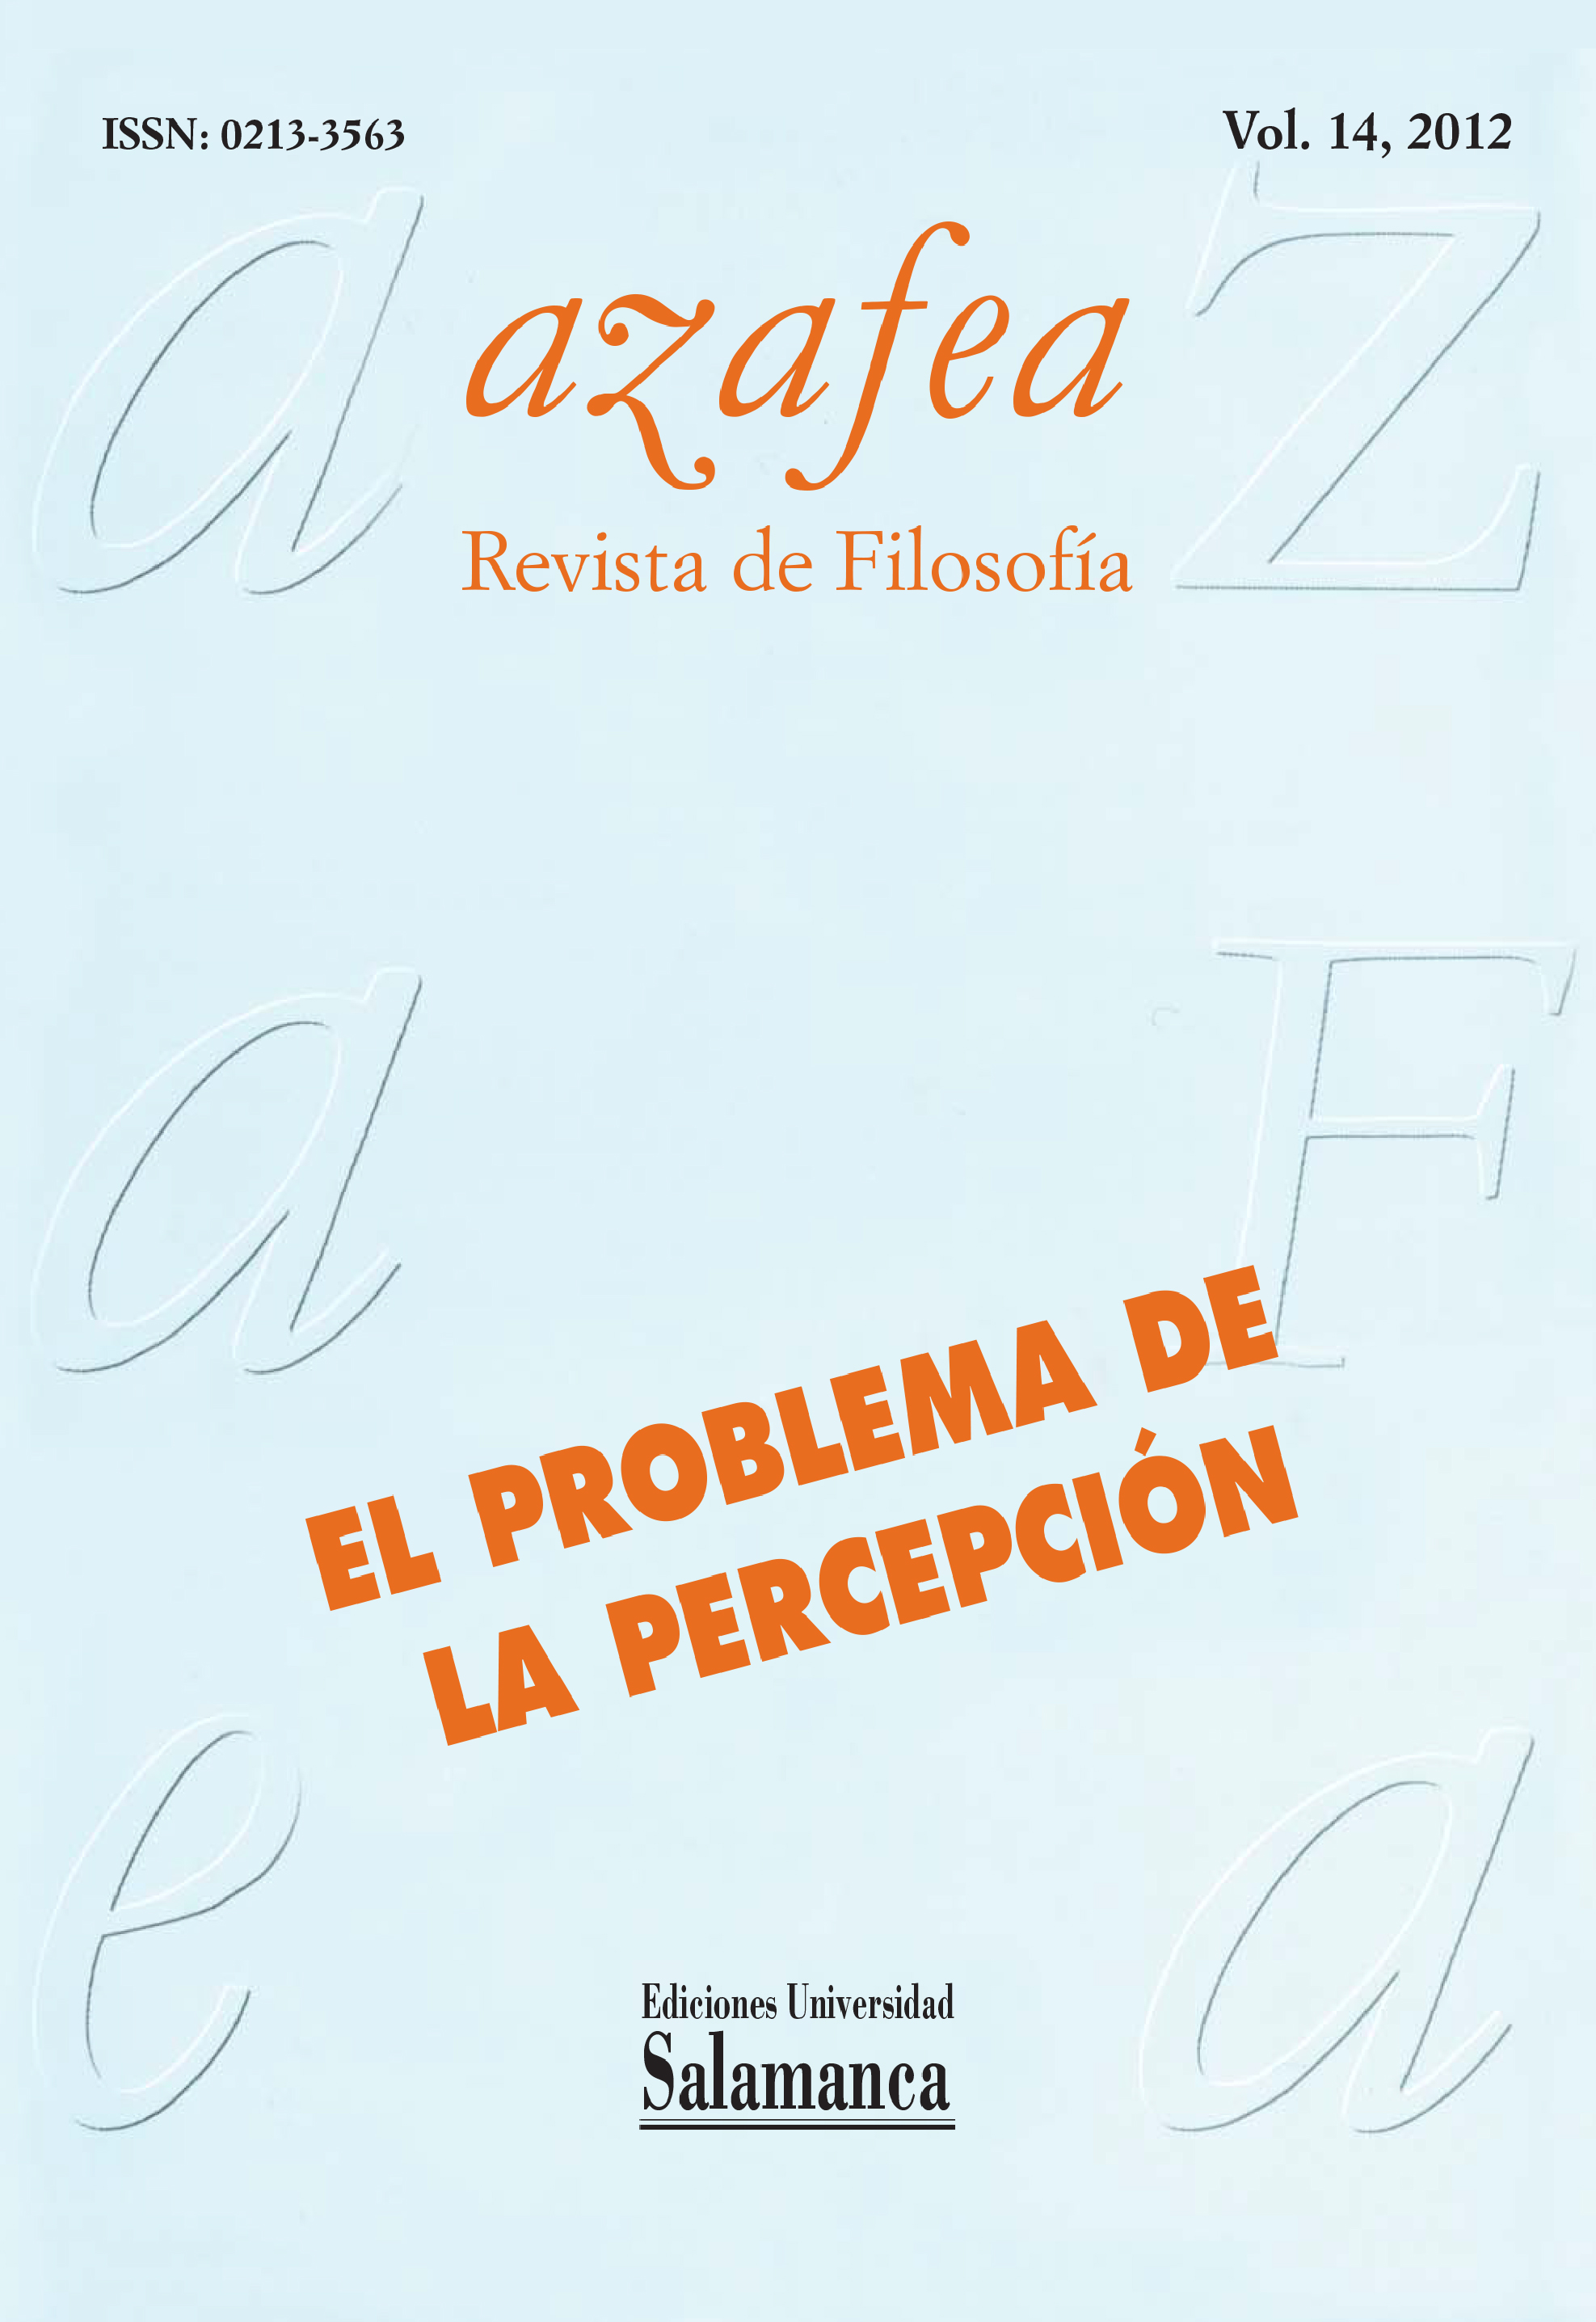                         Ver Vol. 14 (2012): El problema de la percepción
                    